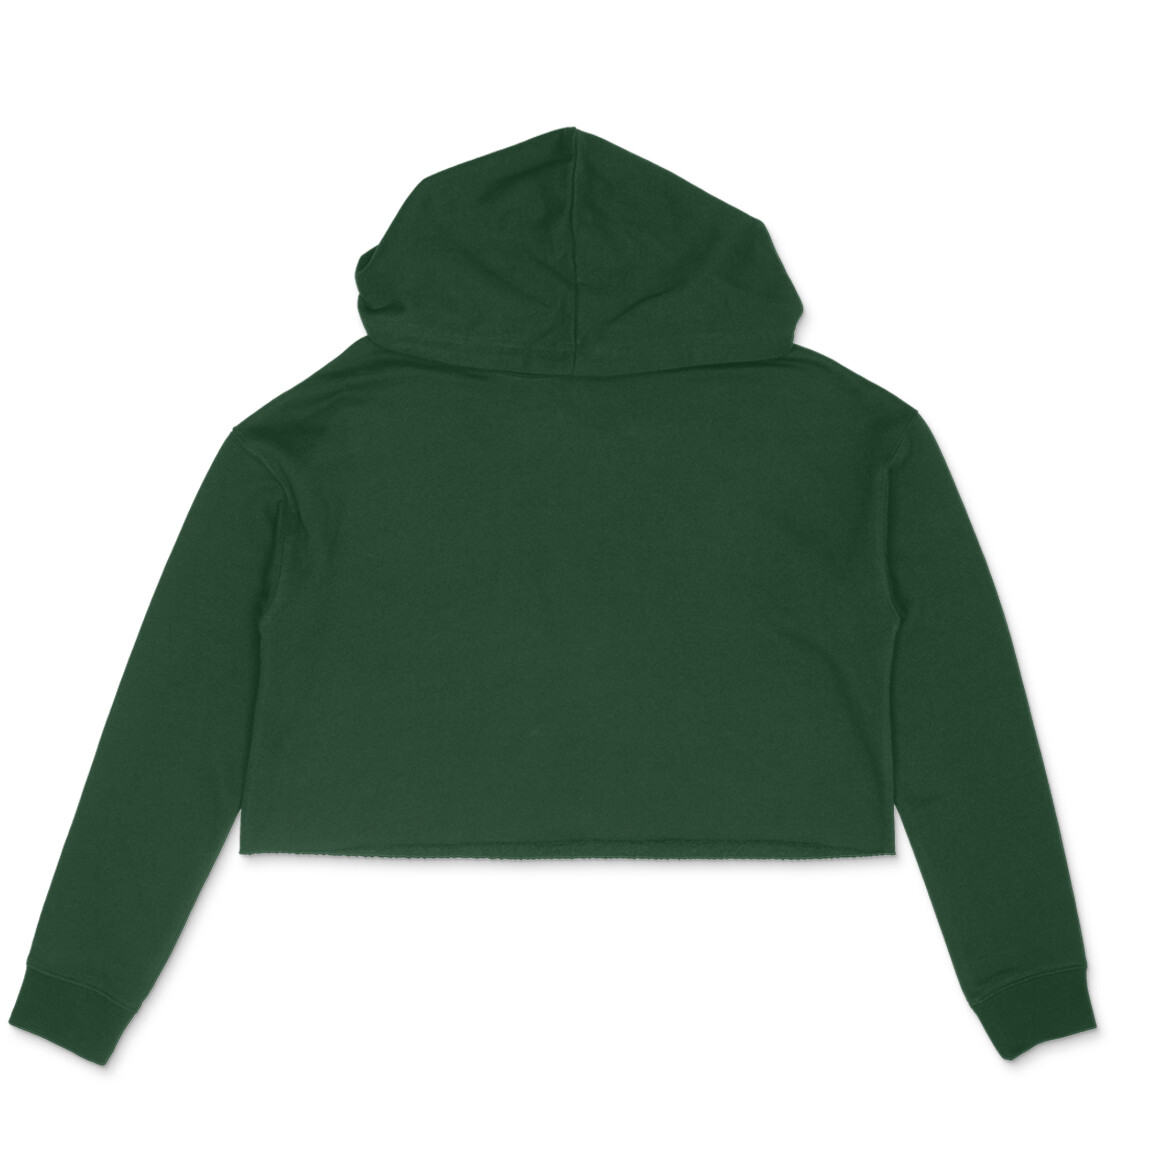 Olive Green Crop Hoodie - Printed T-shirts, Hoodies, Sweatshirts & More!